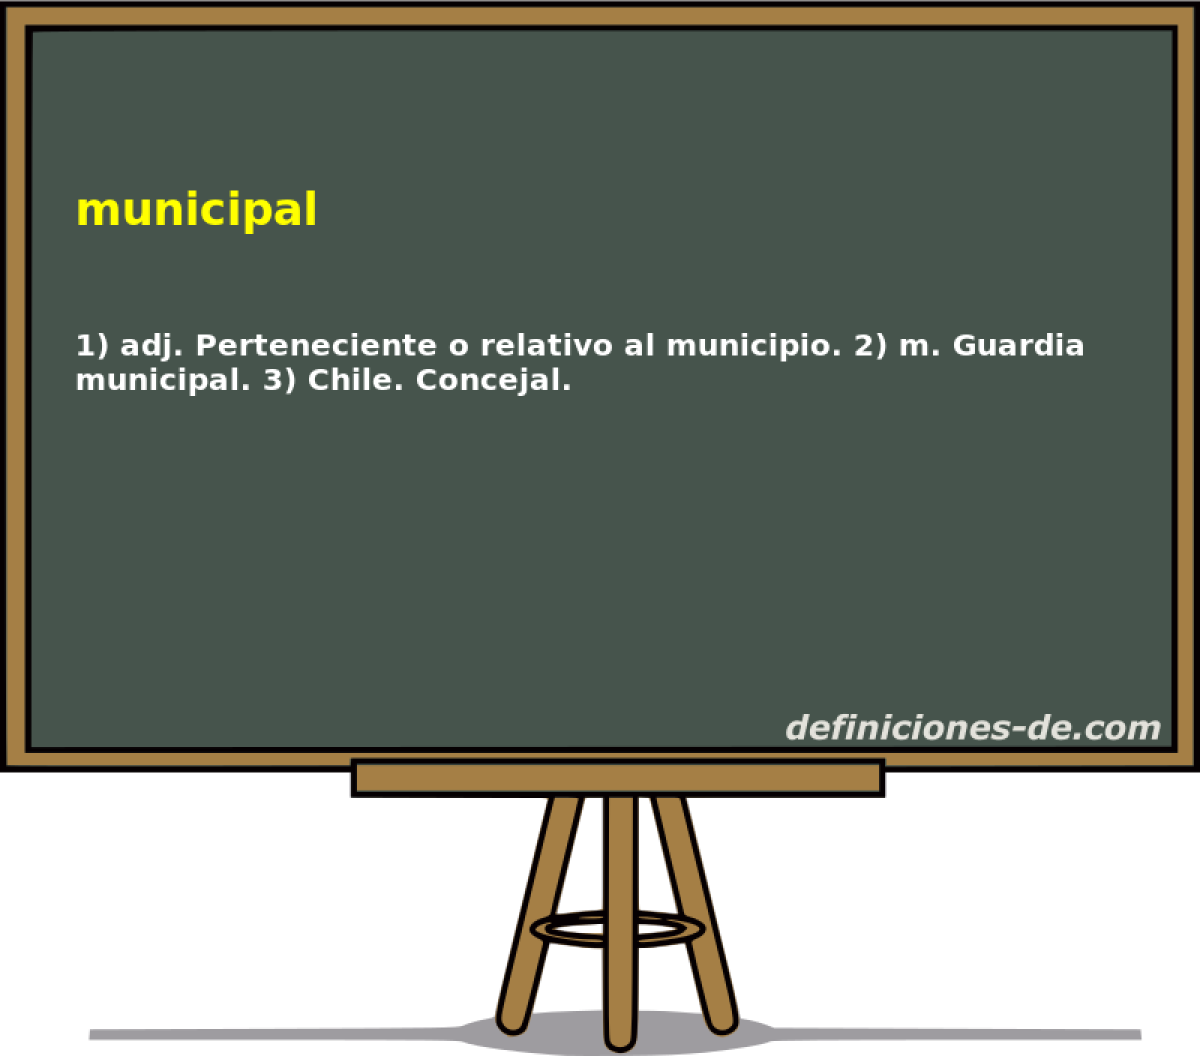 municipal 